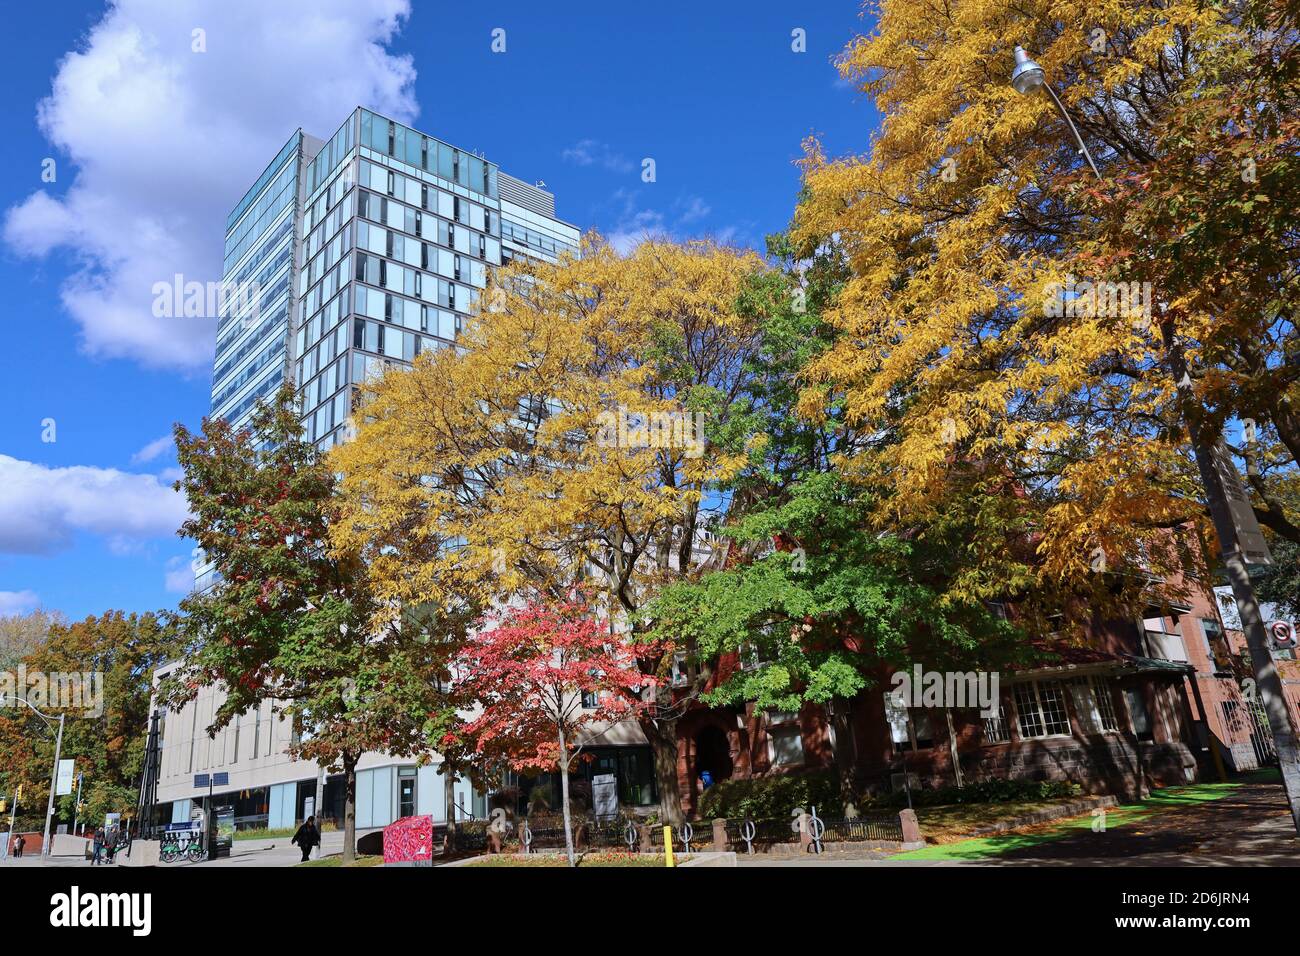 Toronto, Canada - le 16 octobre 2020 : campus de l'Université de Toronto, édifice élevé de l'école de commerce de premier cycle, avec arbres aux couleurs d'automne Banque D'Images